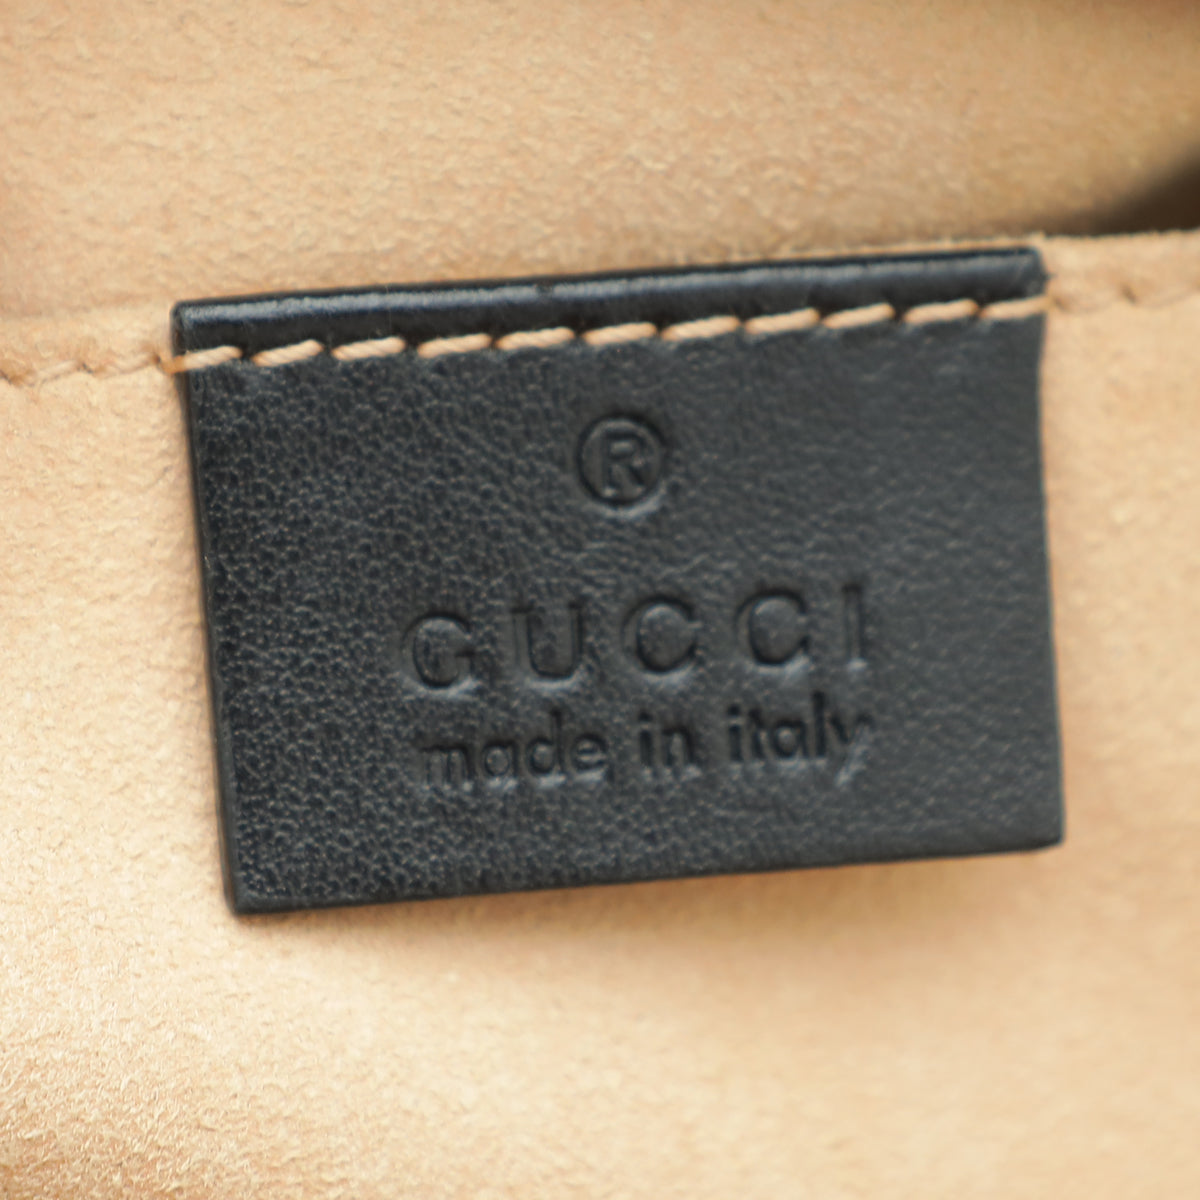 Gucci Black GG Marmont Small Camera Bag